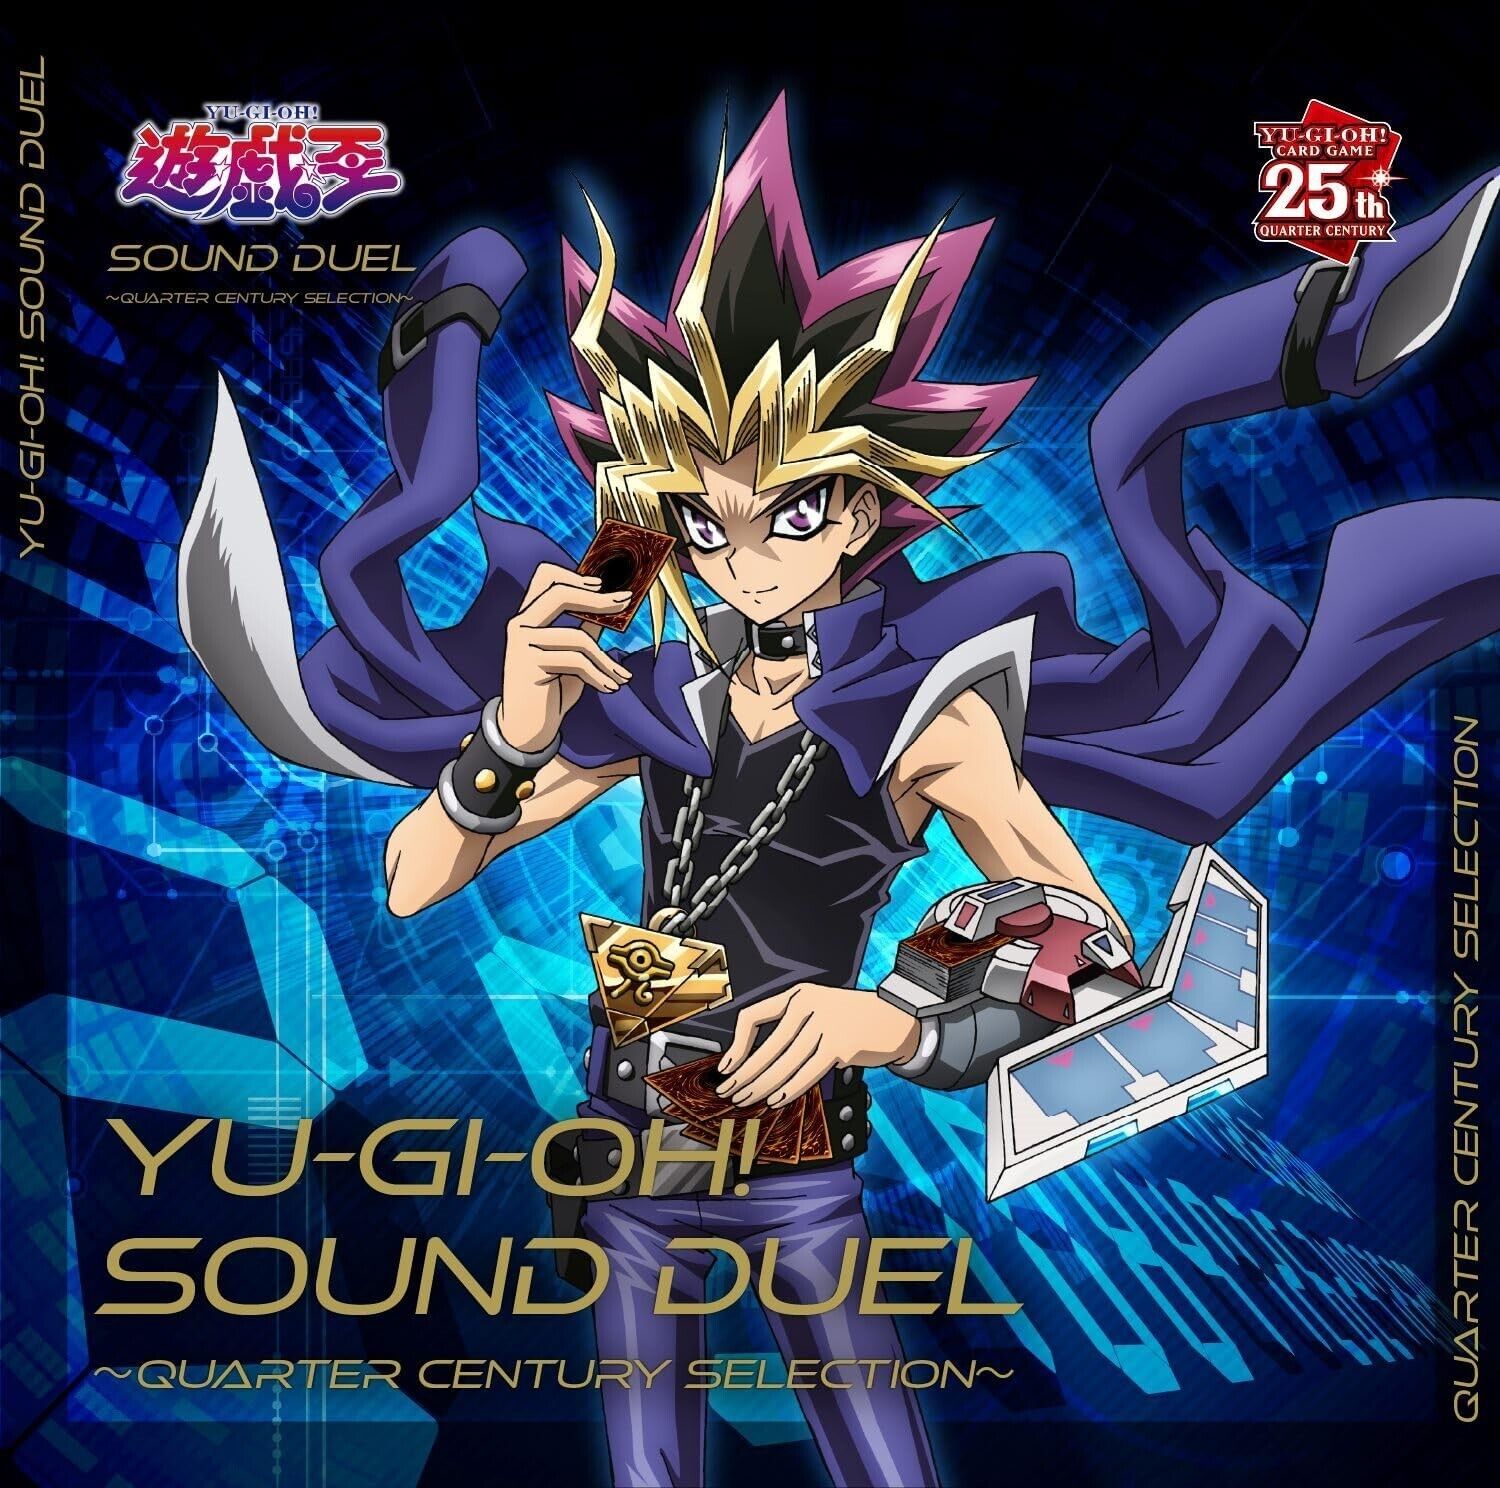 New YU-GI-OH SOUND DUEL QUARTER CENTURY SELECTION 2 CD+Kuriboh Card Japan